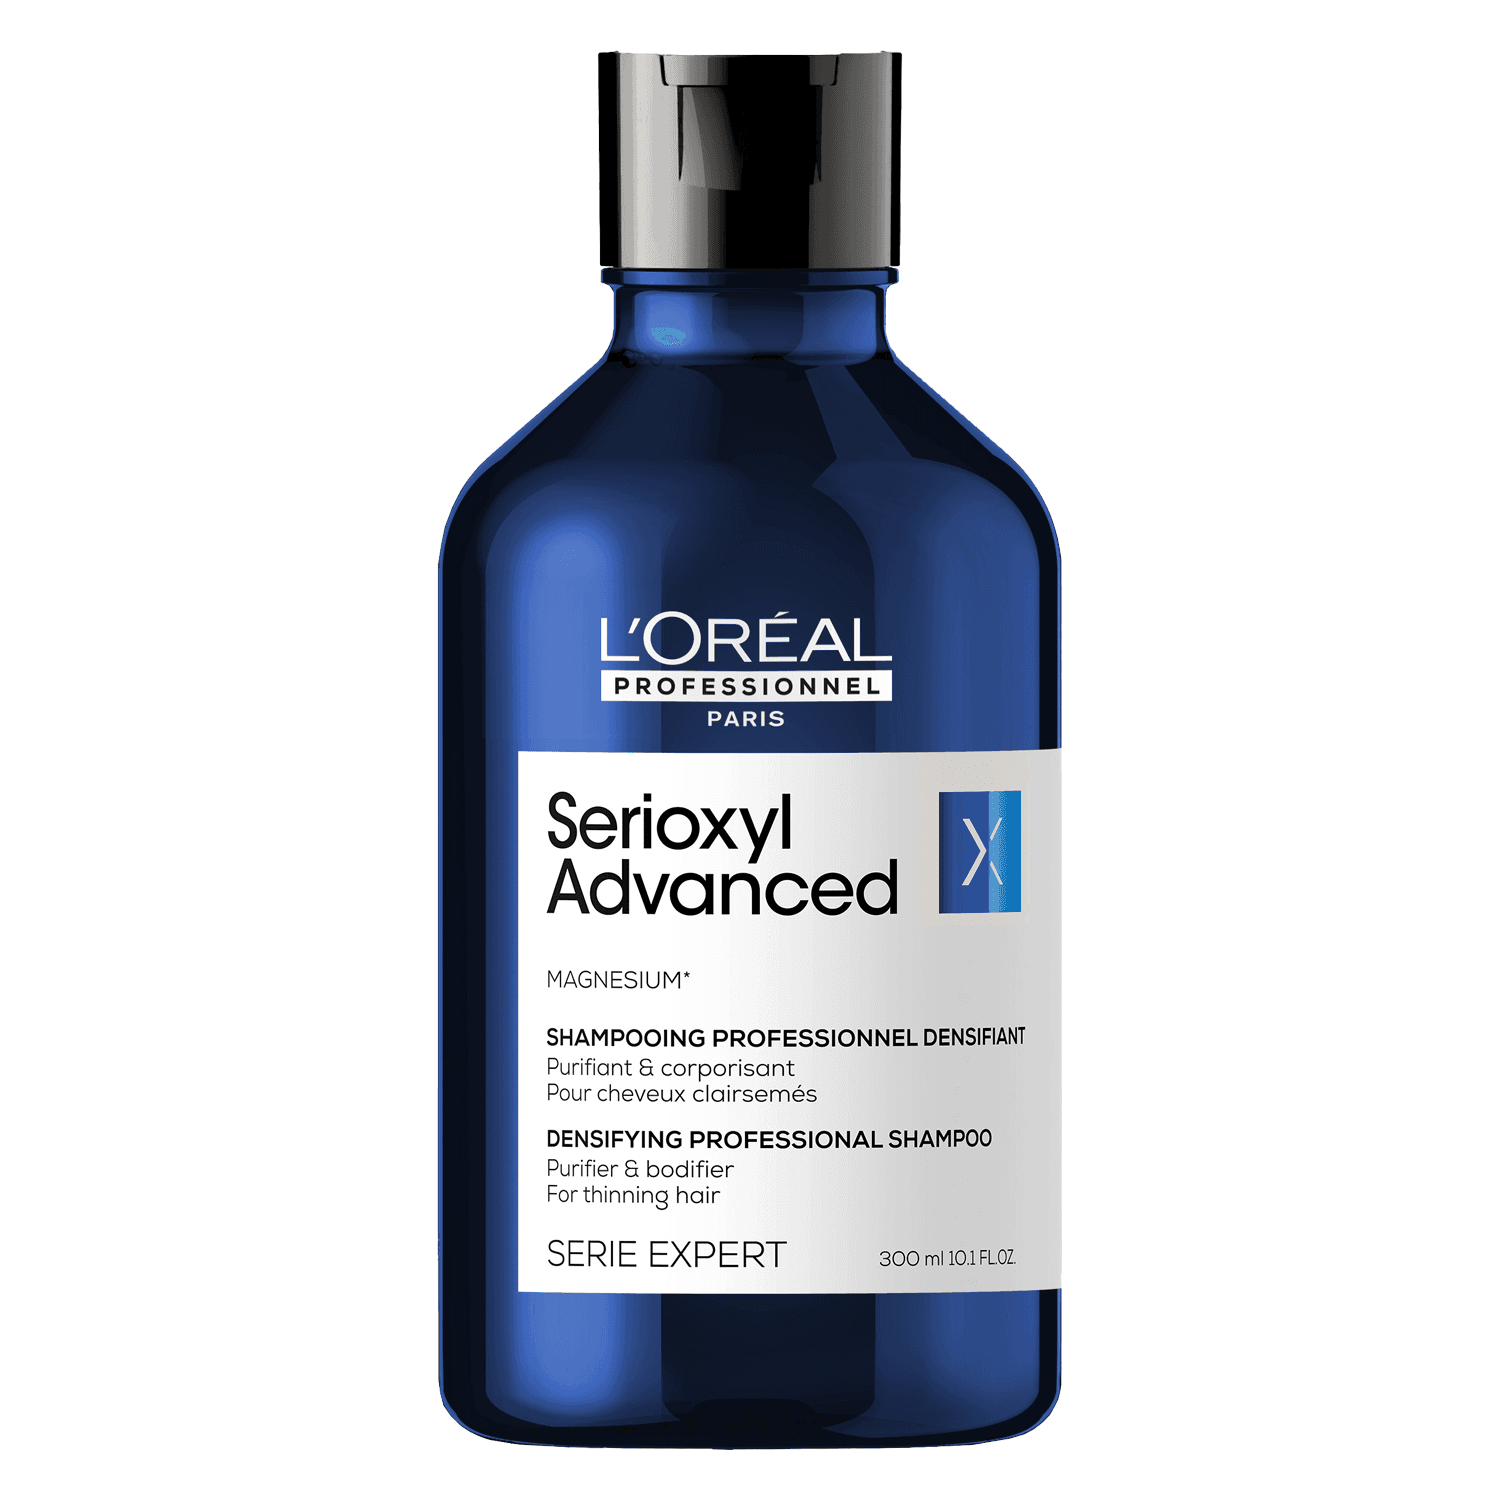 Serioxyl - Advanced Anti Hair-Thinning Purifier & Bodifier Shampoo